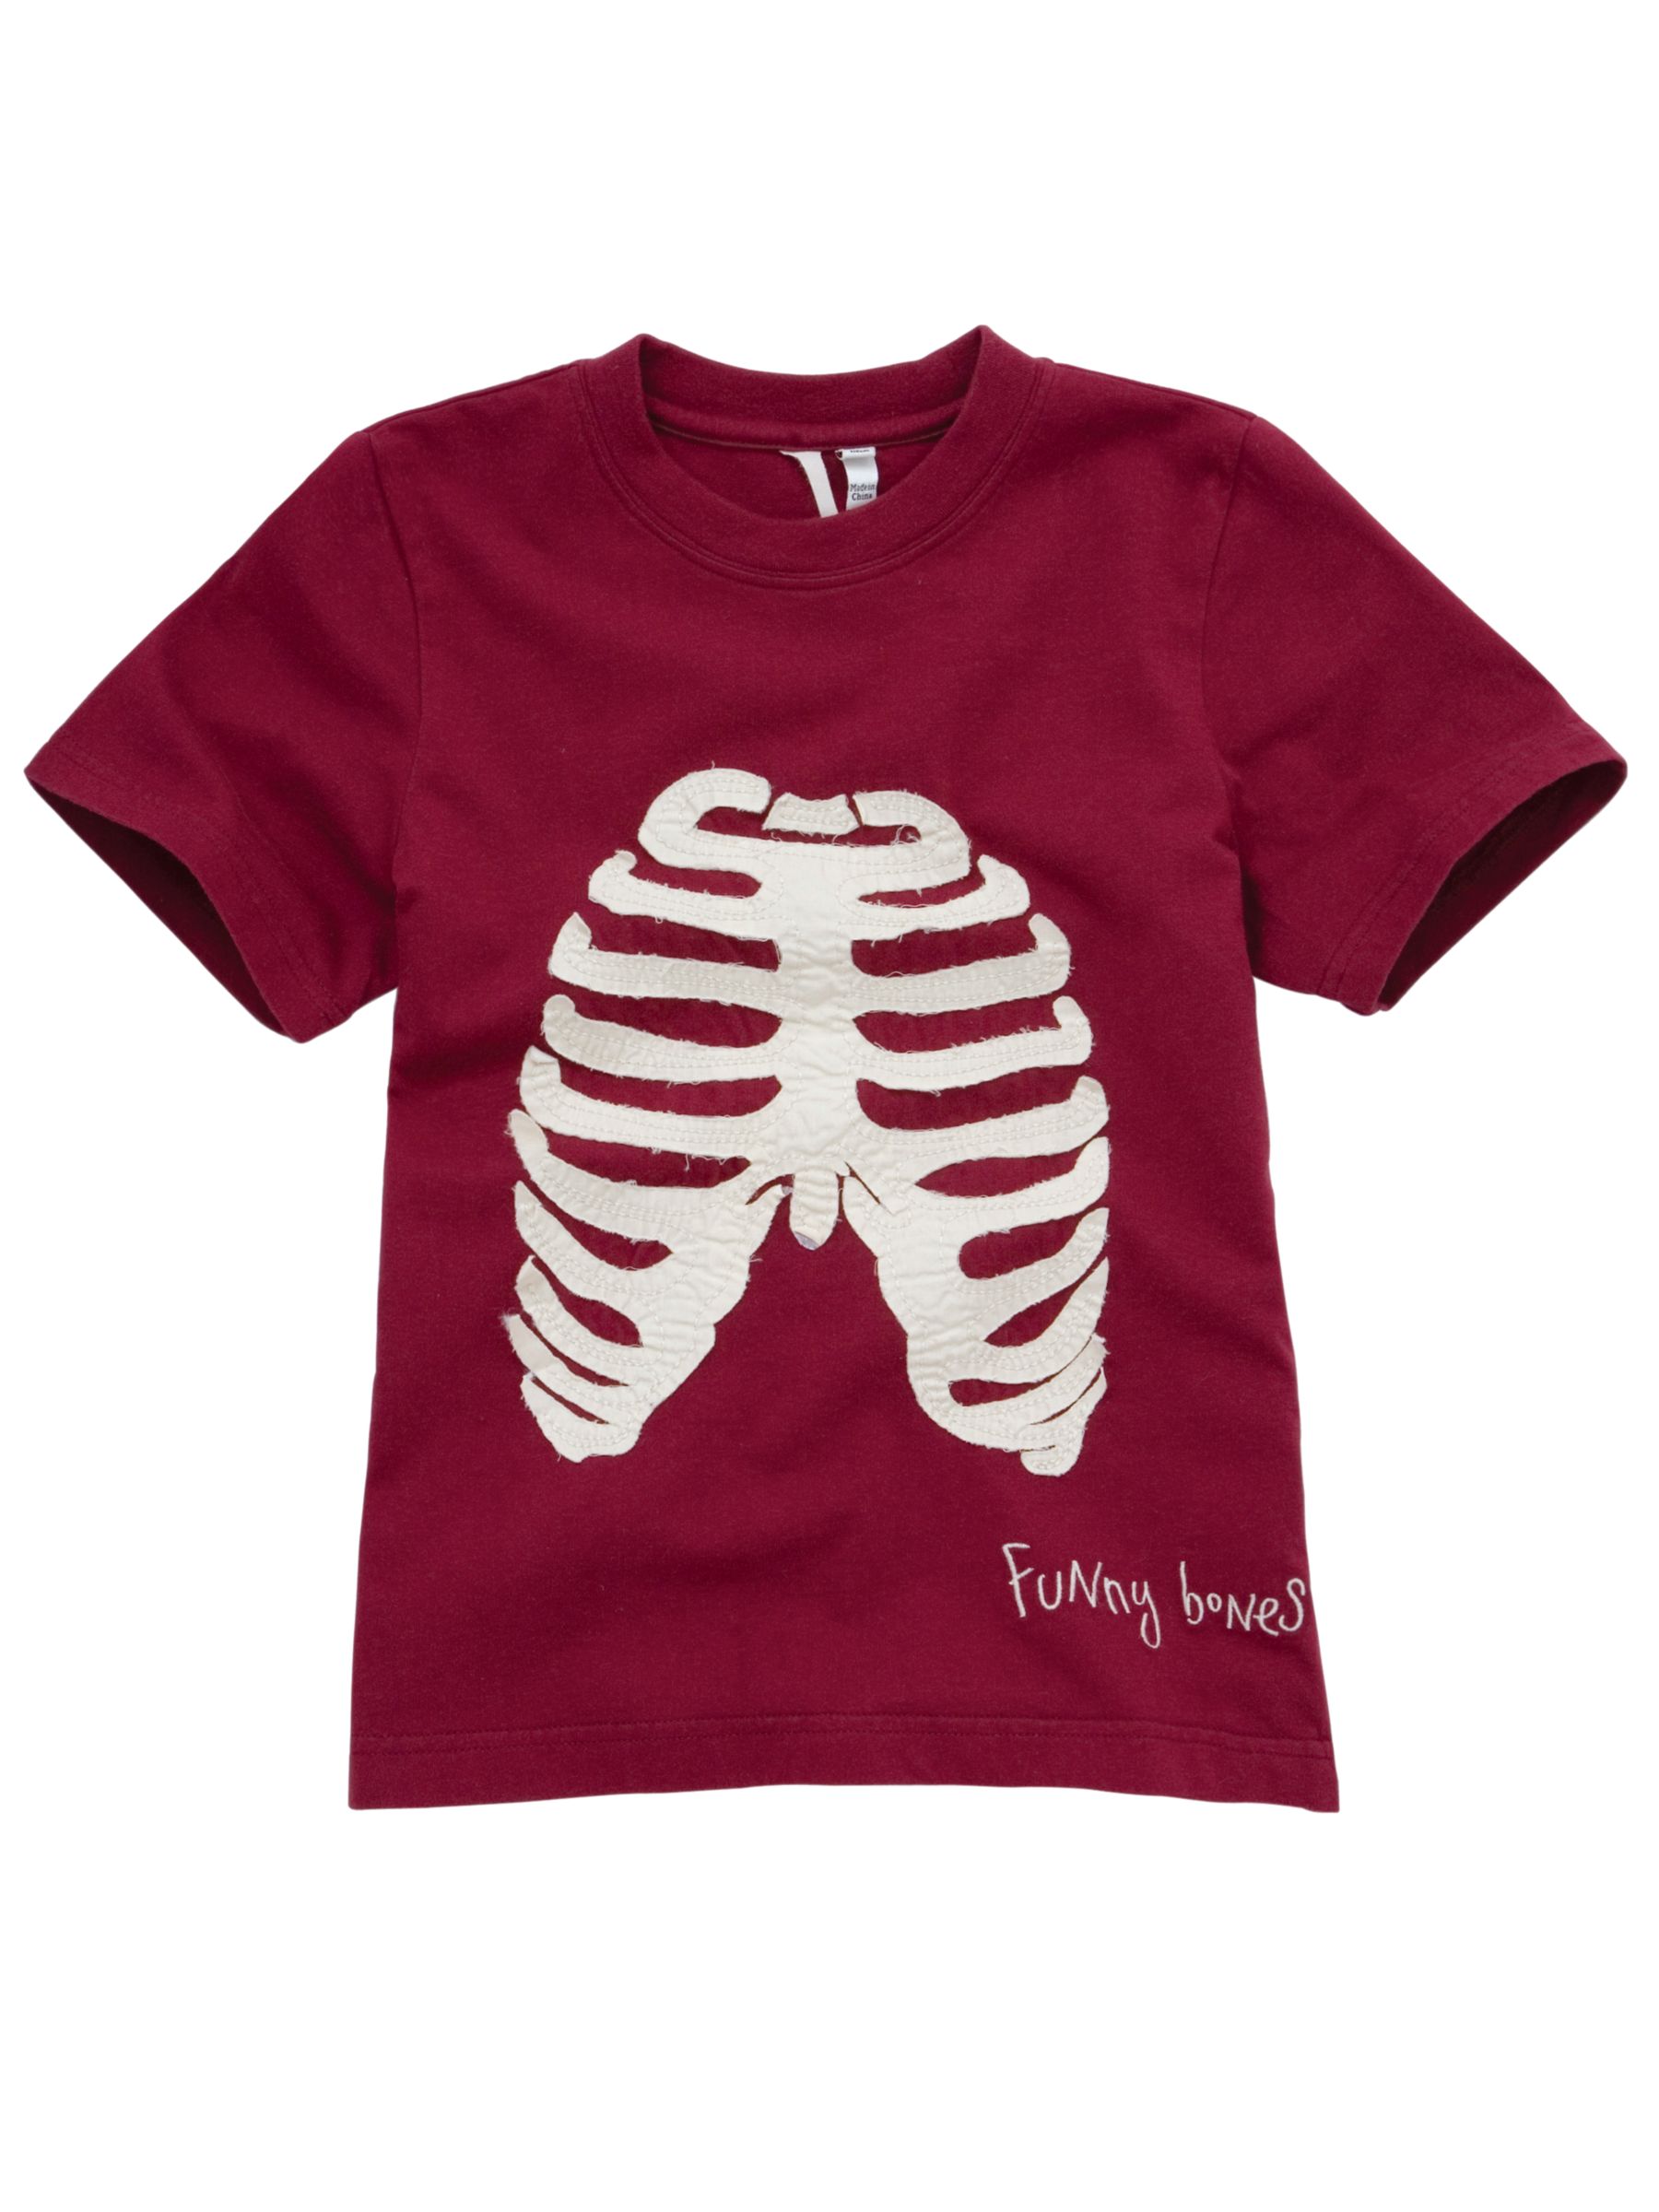 Stewart Bones T-Shirt, Red